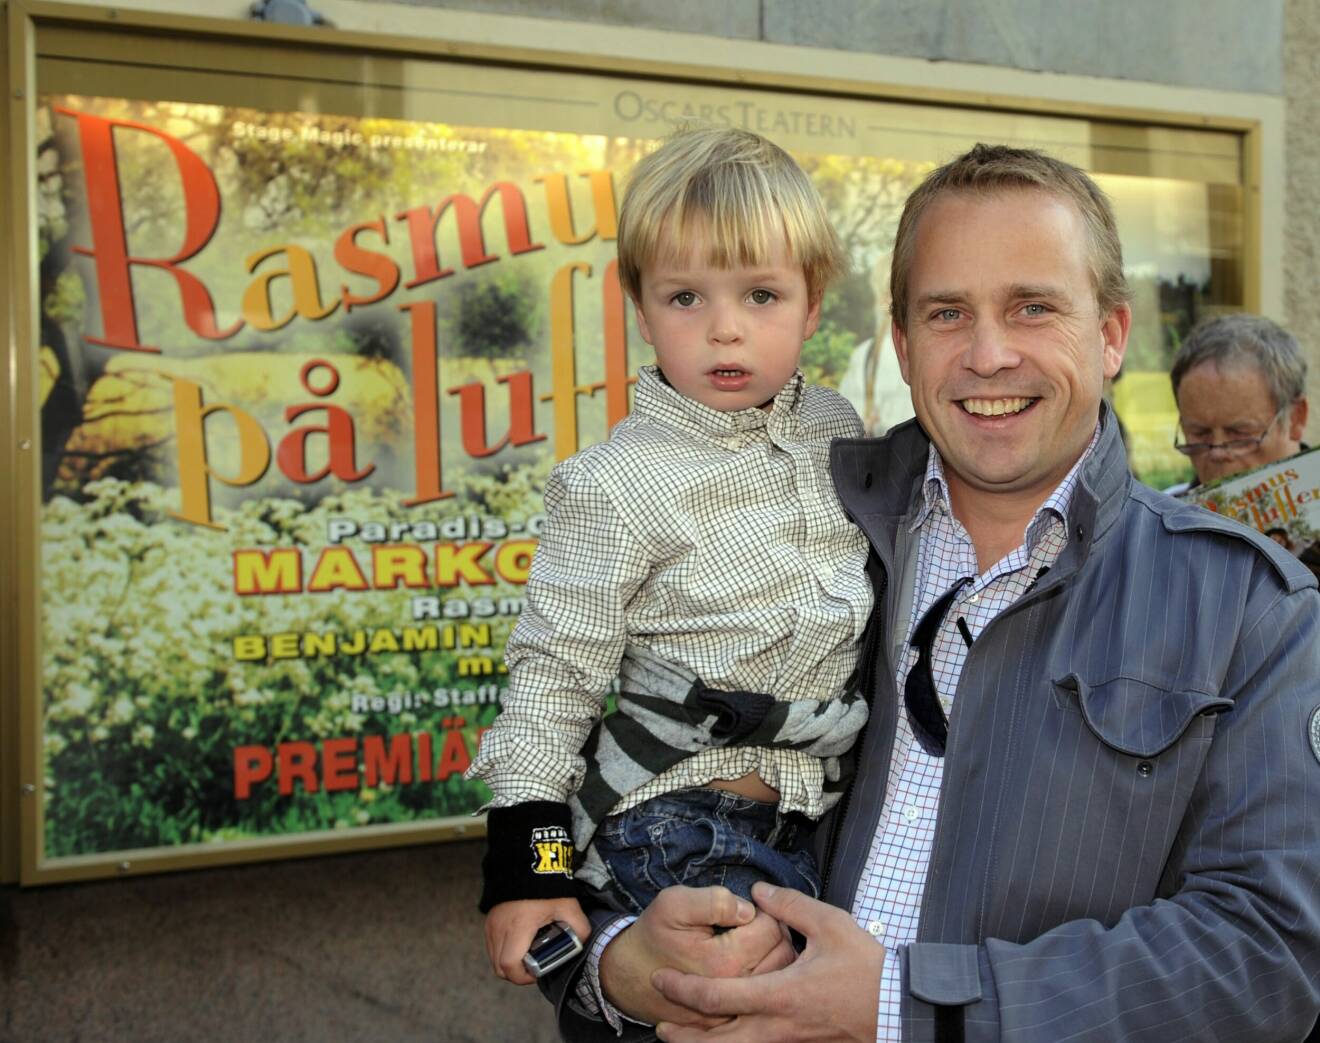 På galapremiären av Rasmus på luffen på Oscarsteatern år 2009, fanns Erik Lindgren i vimlet tillsammans med gudsonen Gideon på armen.